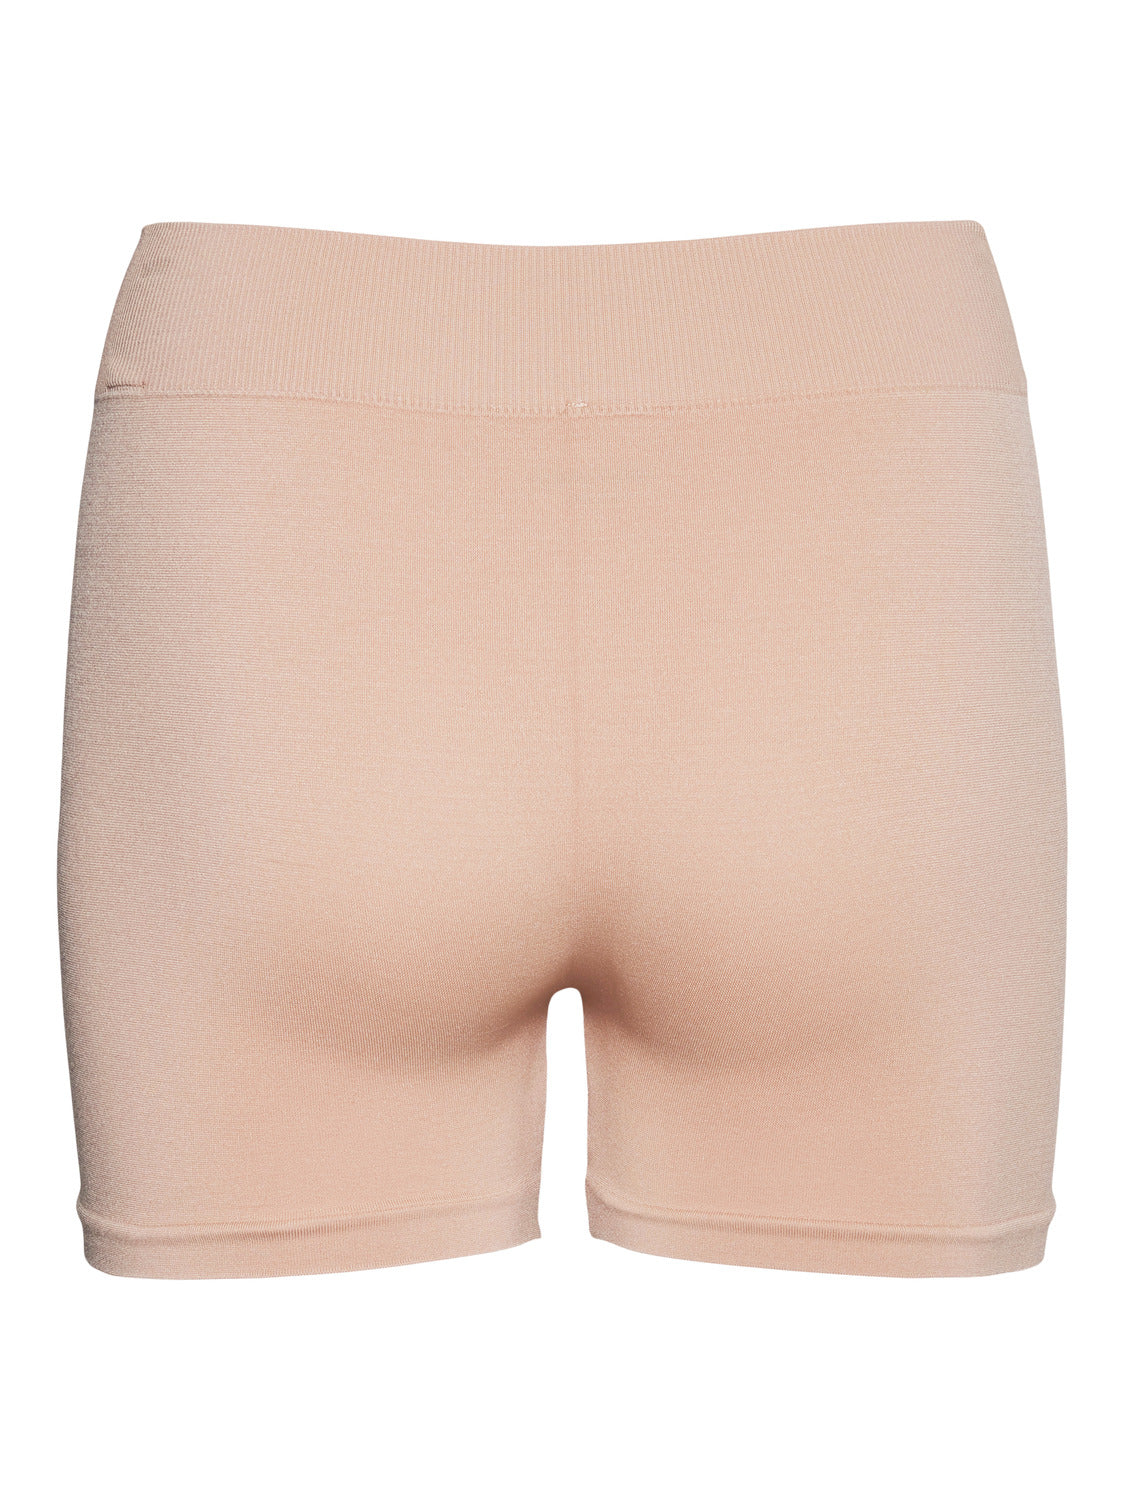 VMJACKIE Shorts - Tan